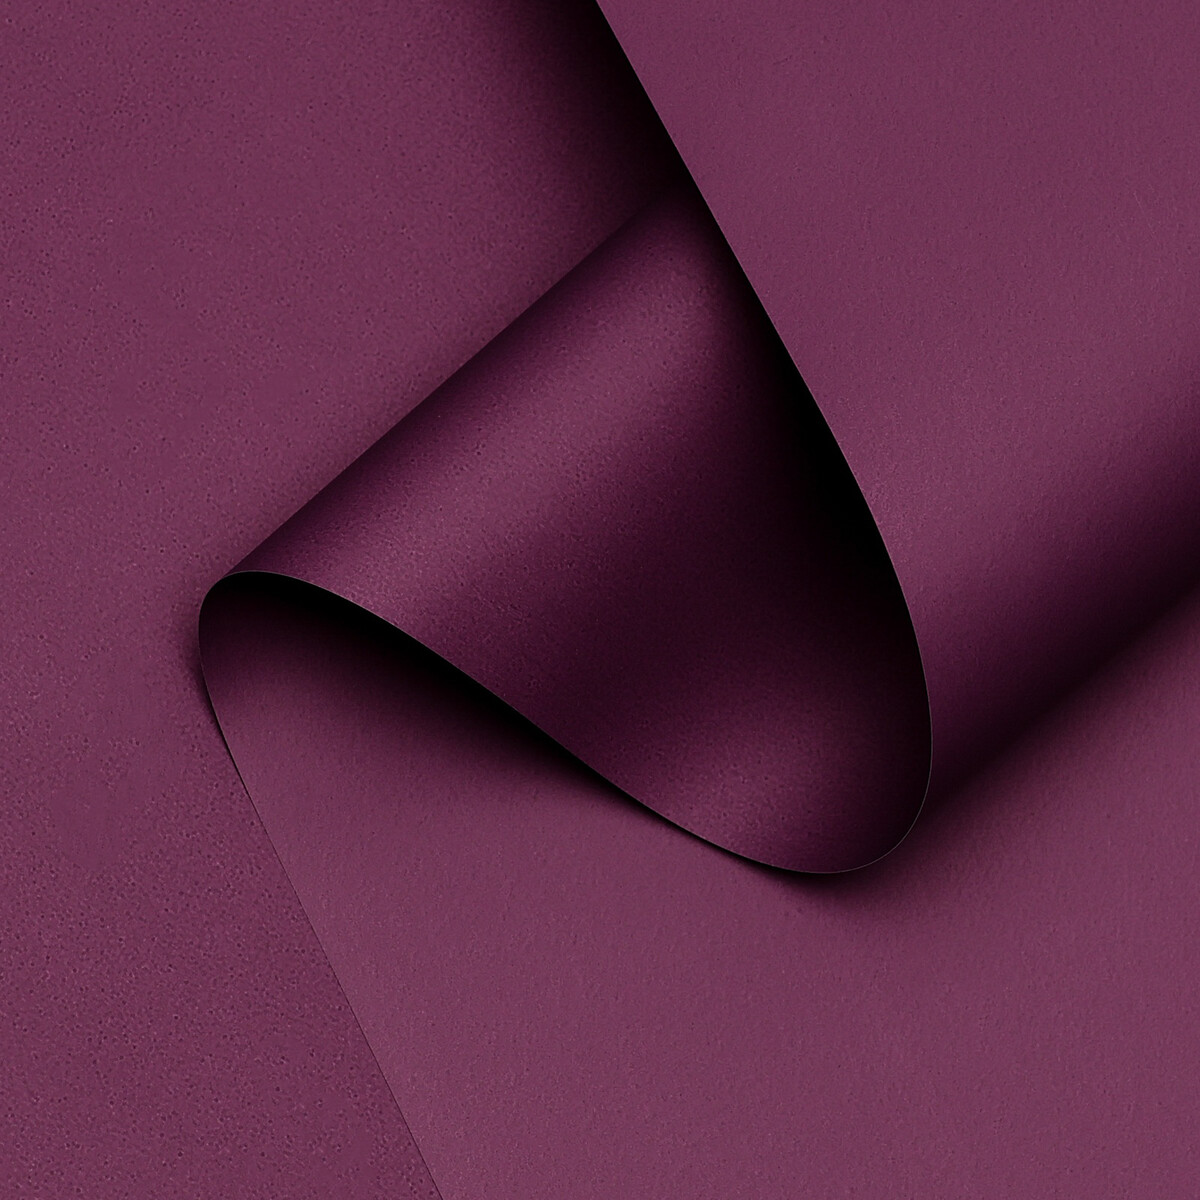 Пленка для цветов тонированная, матовая, пурпур пастель, 0,5 х 10 м ±1 см, 65 мкм пленка для ов тонированная матовая лосось пастель 0 5 х 10 м 65 мкм